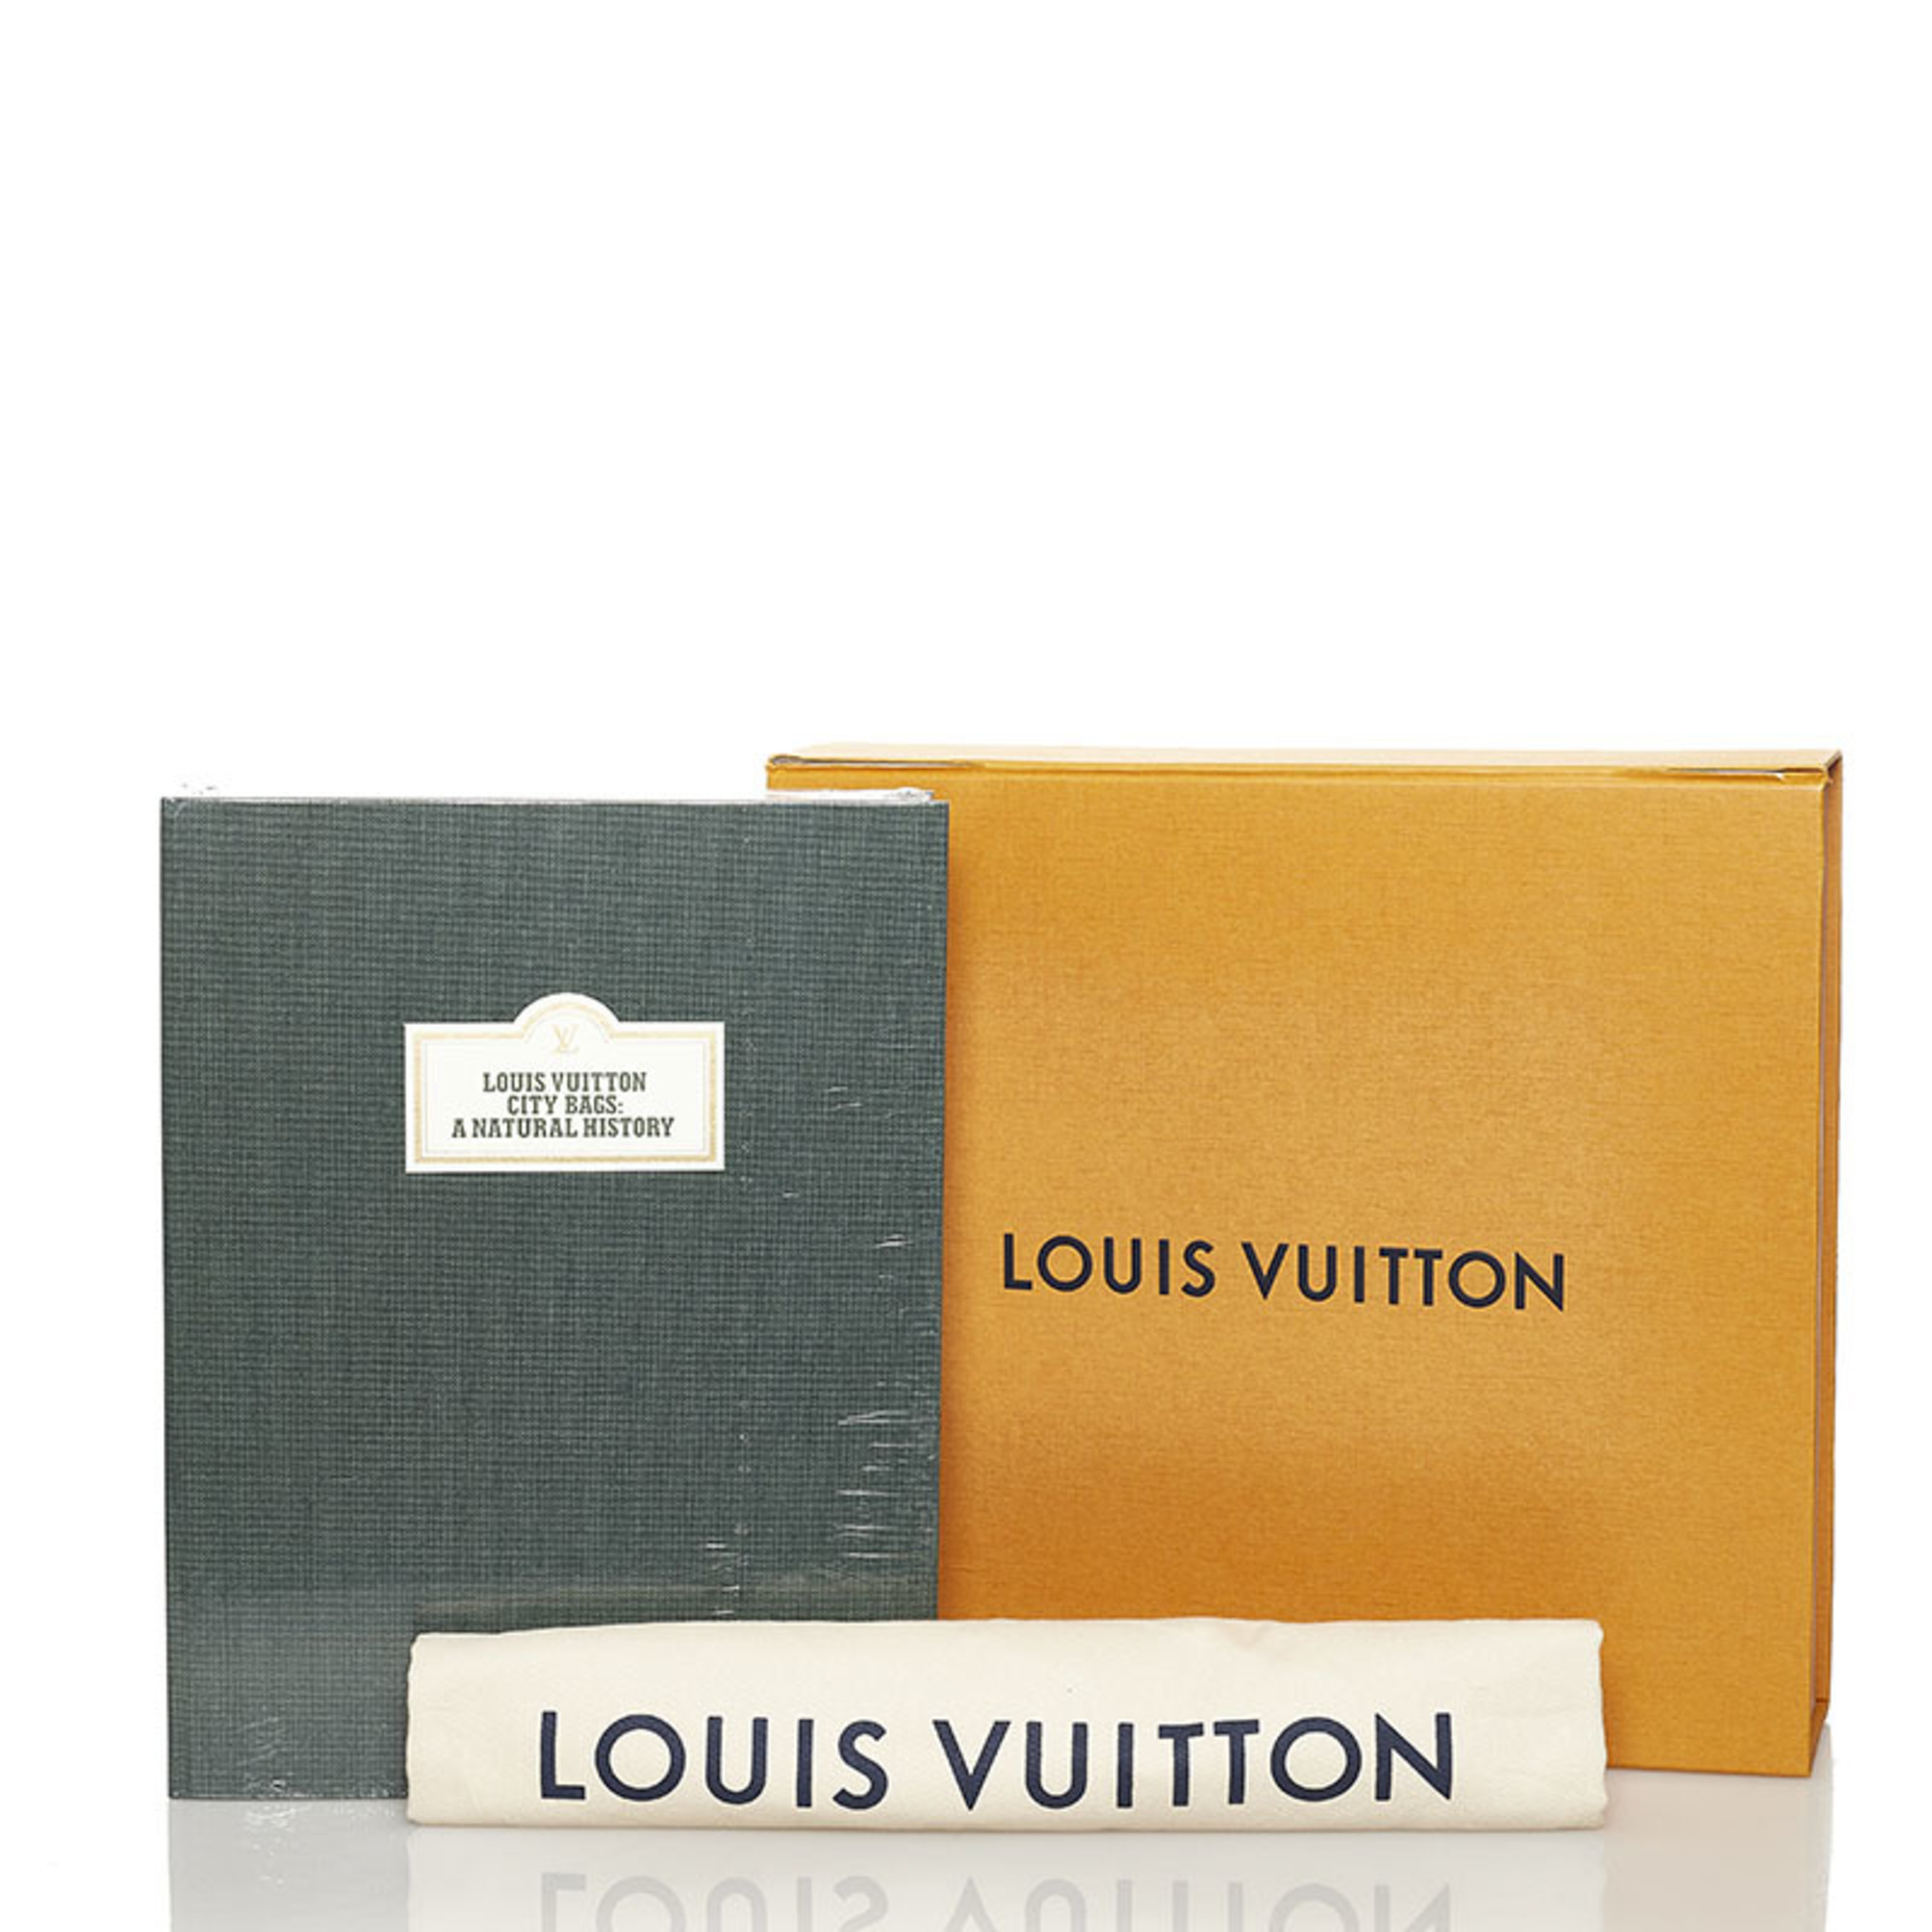 Louis Vuitton City Bag Natural History Hotel Label Collection Set of 2 Photo Paper Women's LOUIS VUITTON